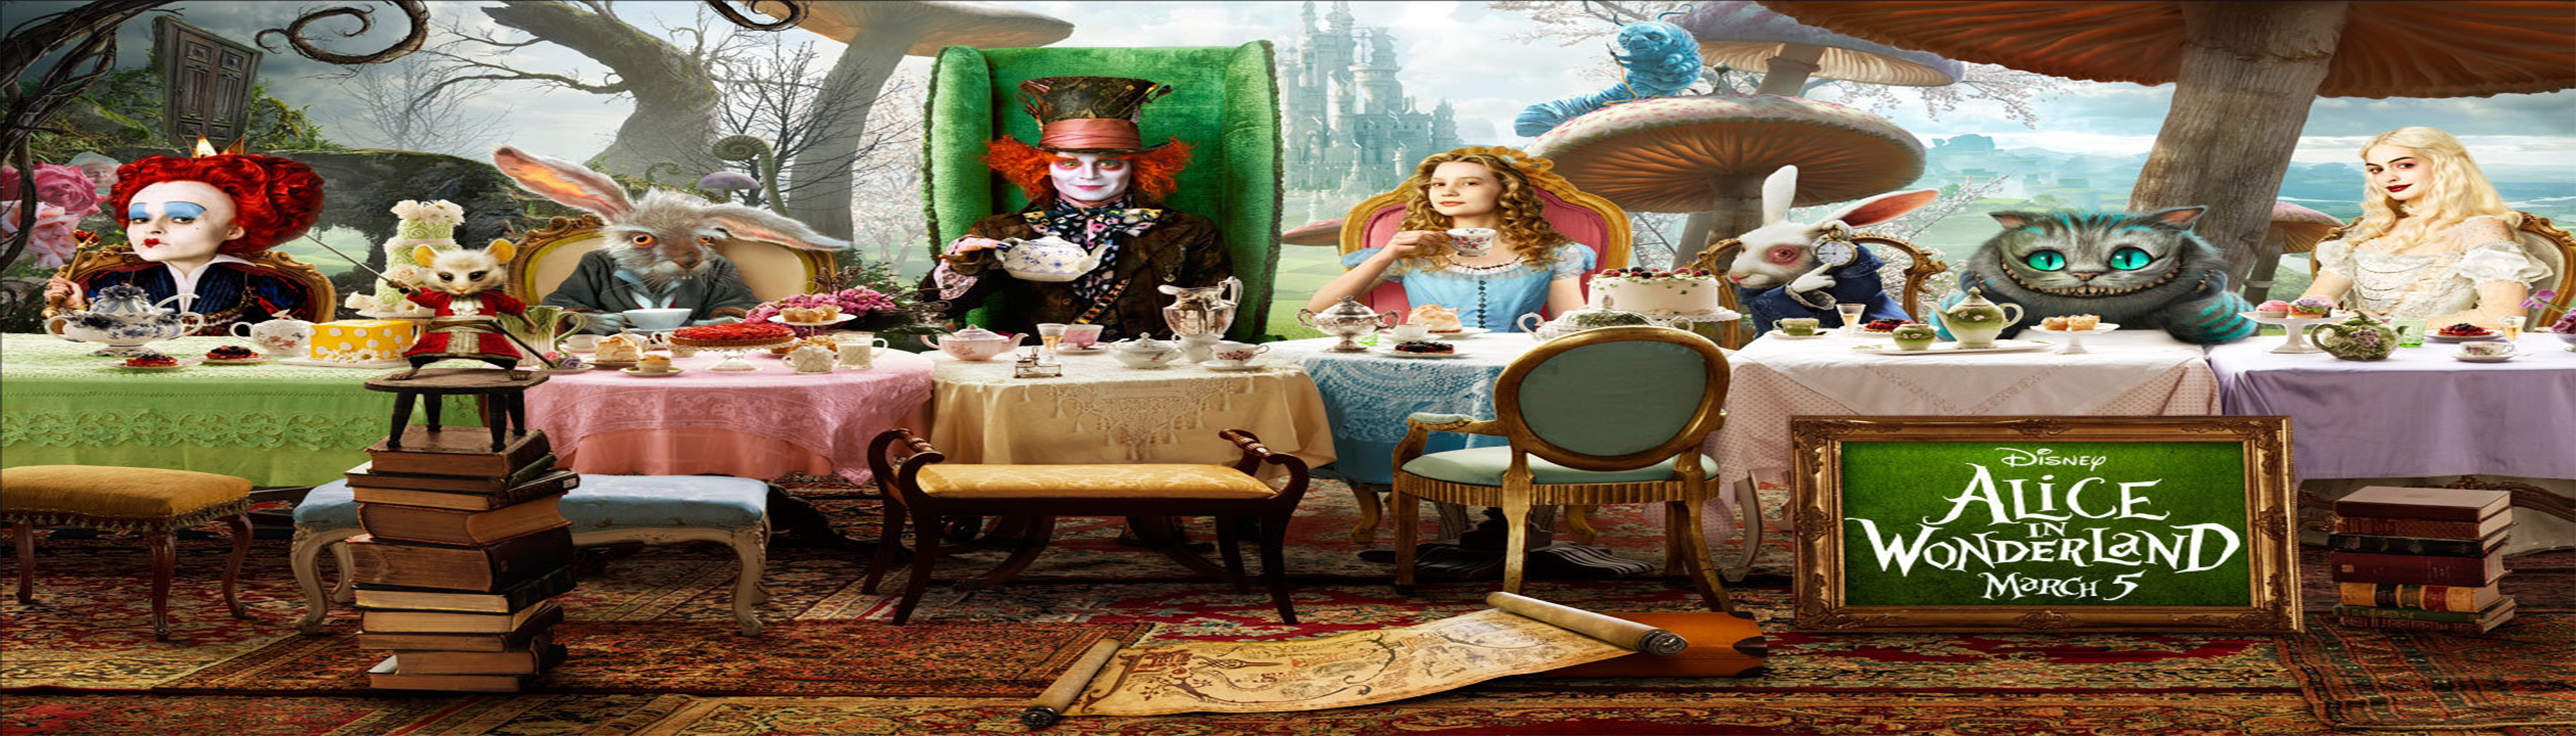 دانلود فیلم Alice in Wonderland با دوبله گلوری